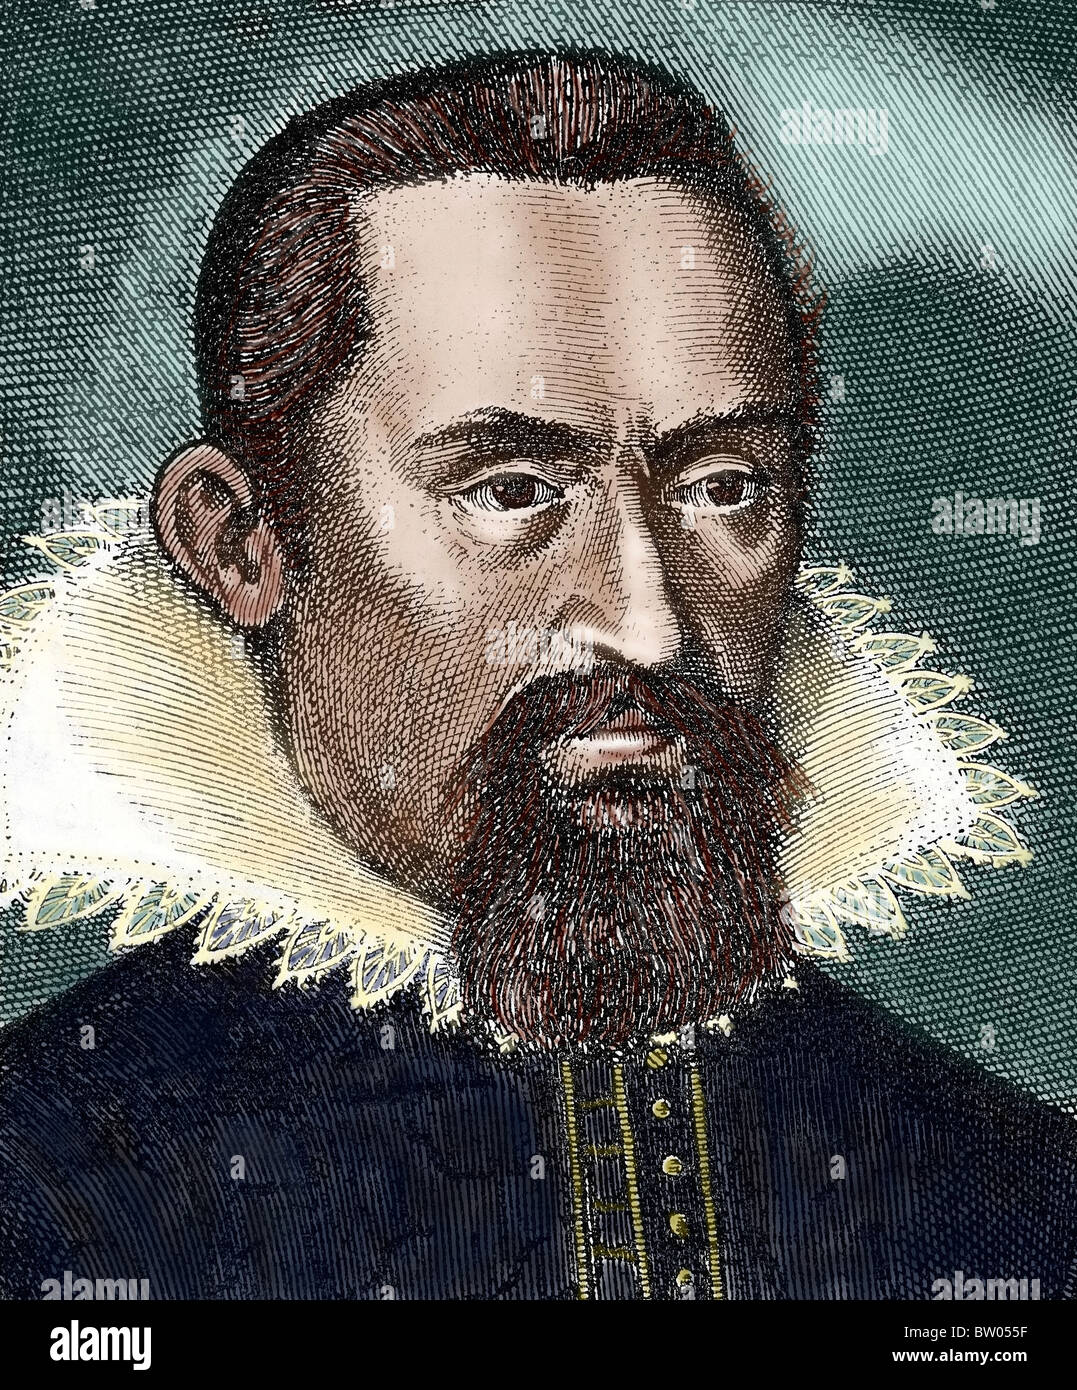 Kepler, Johannes (1571-1630) mathématicien et astronome. Considéré comme le fondateur de l'astronomie moderne. Gravure en couleur. Banque D'Images